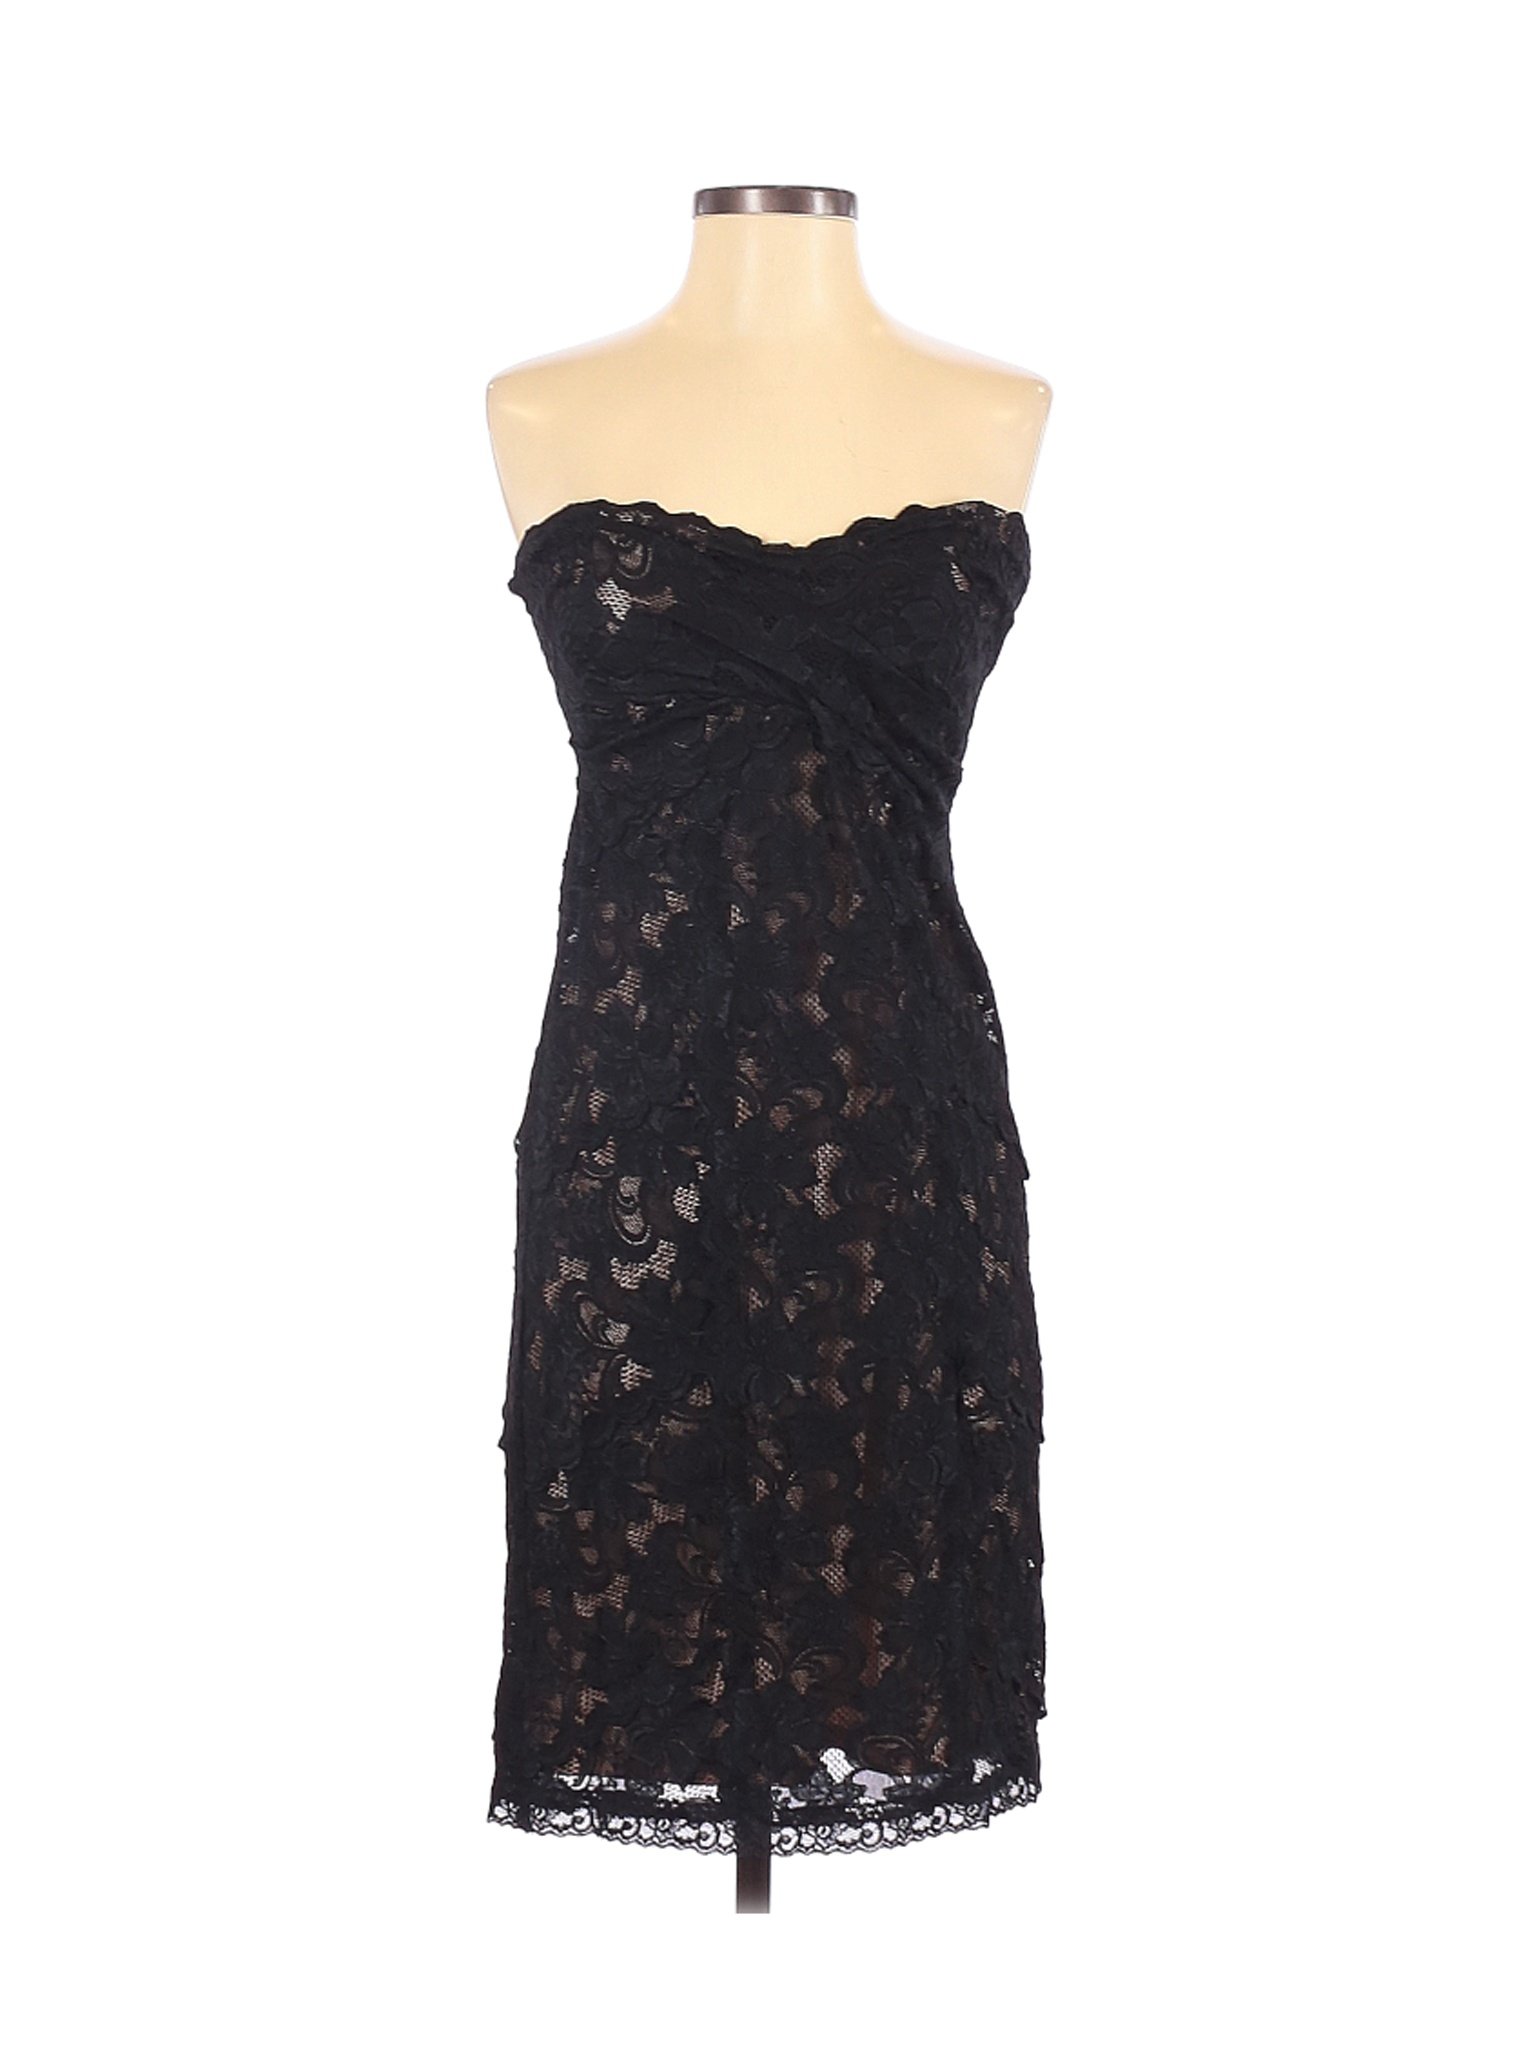 Nicole by Nicole Miller Women Black Casual Dress 4 | eBay